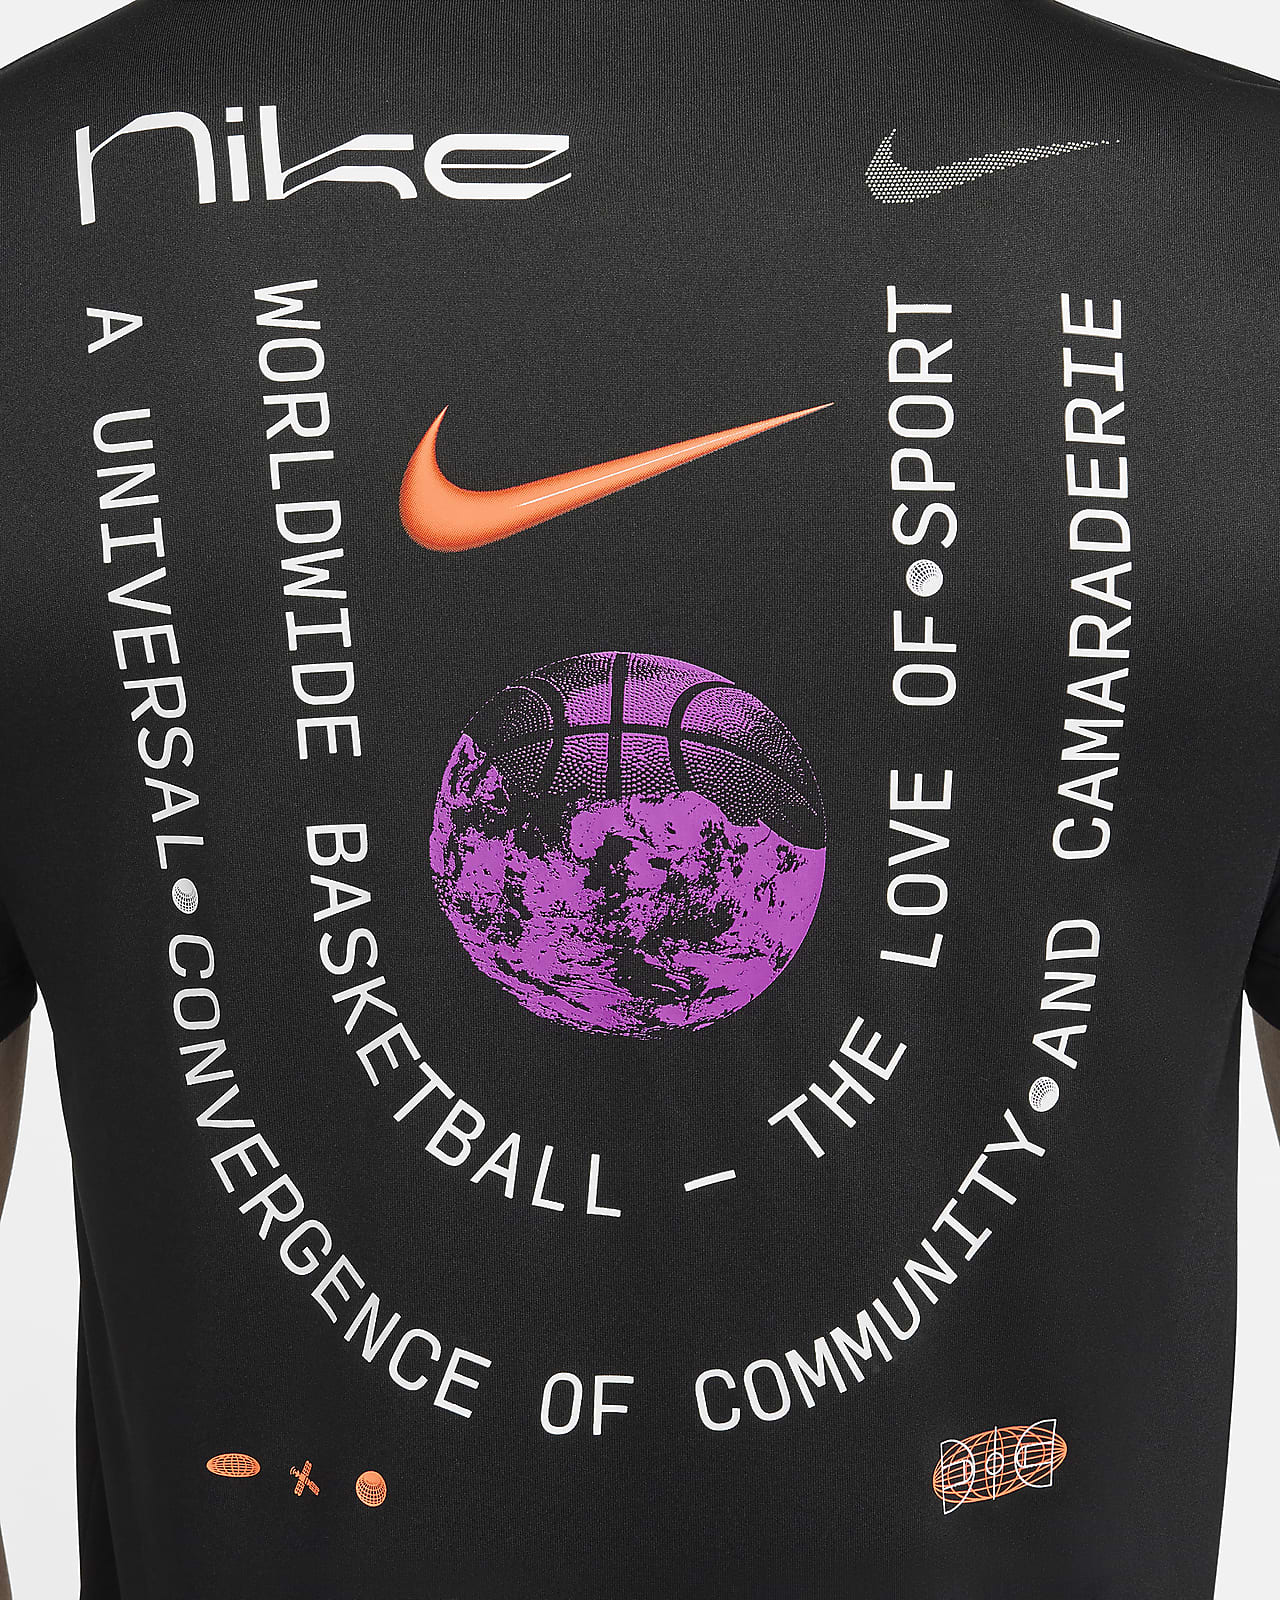 ナイキ メンズ Dri-FIT バスケットボール Tシャツ